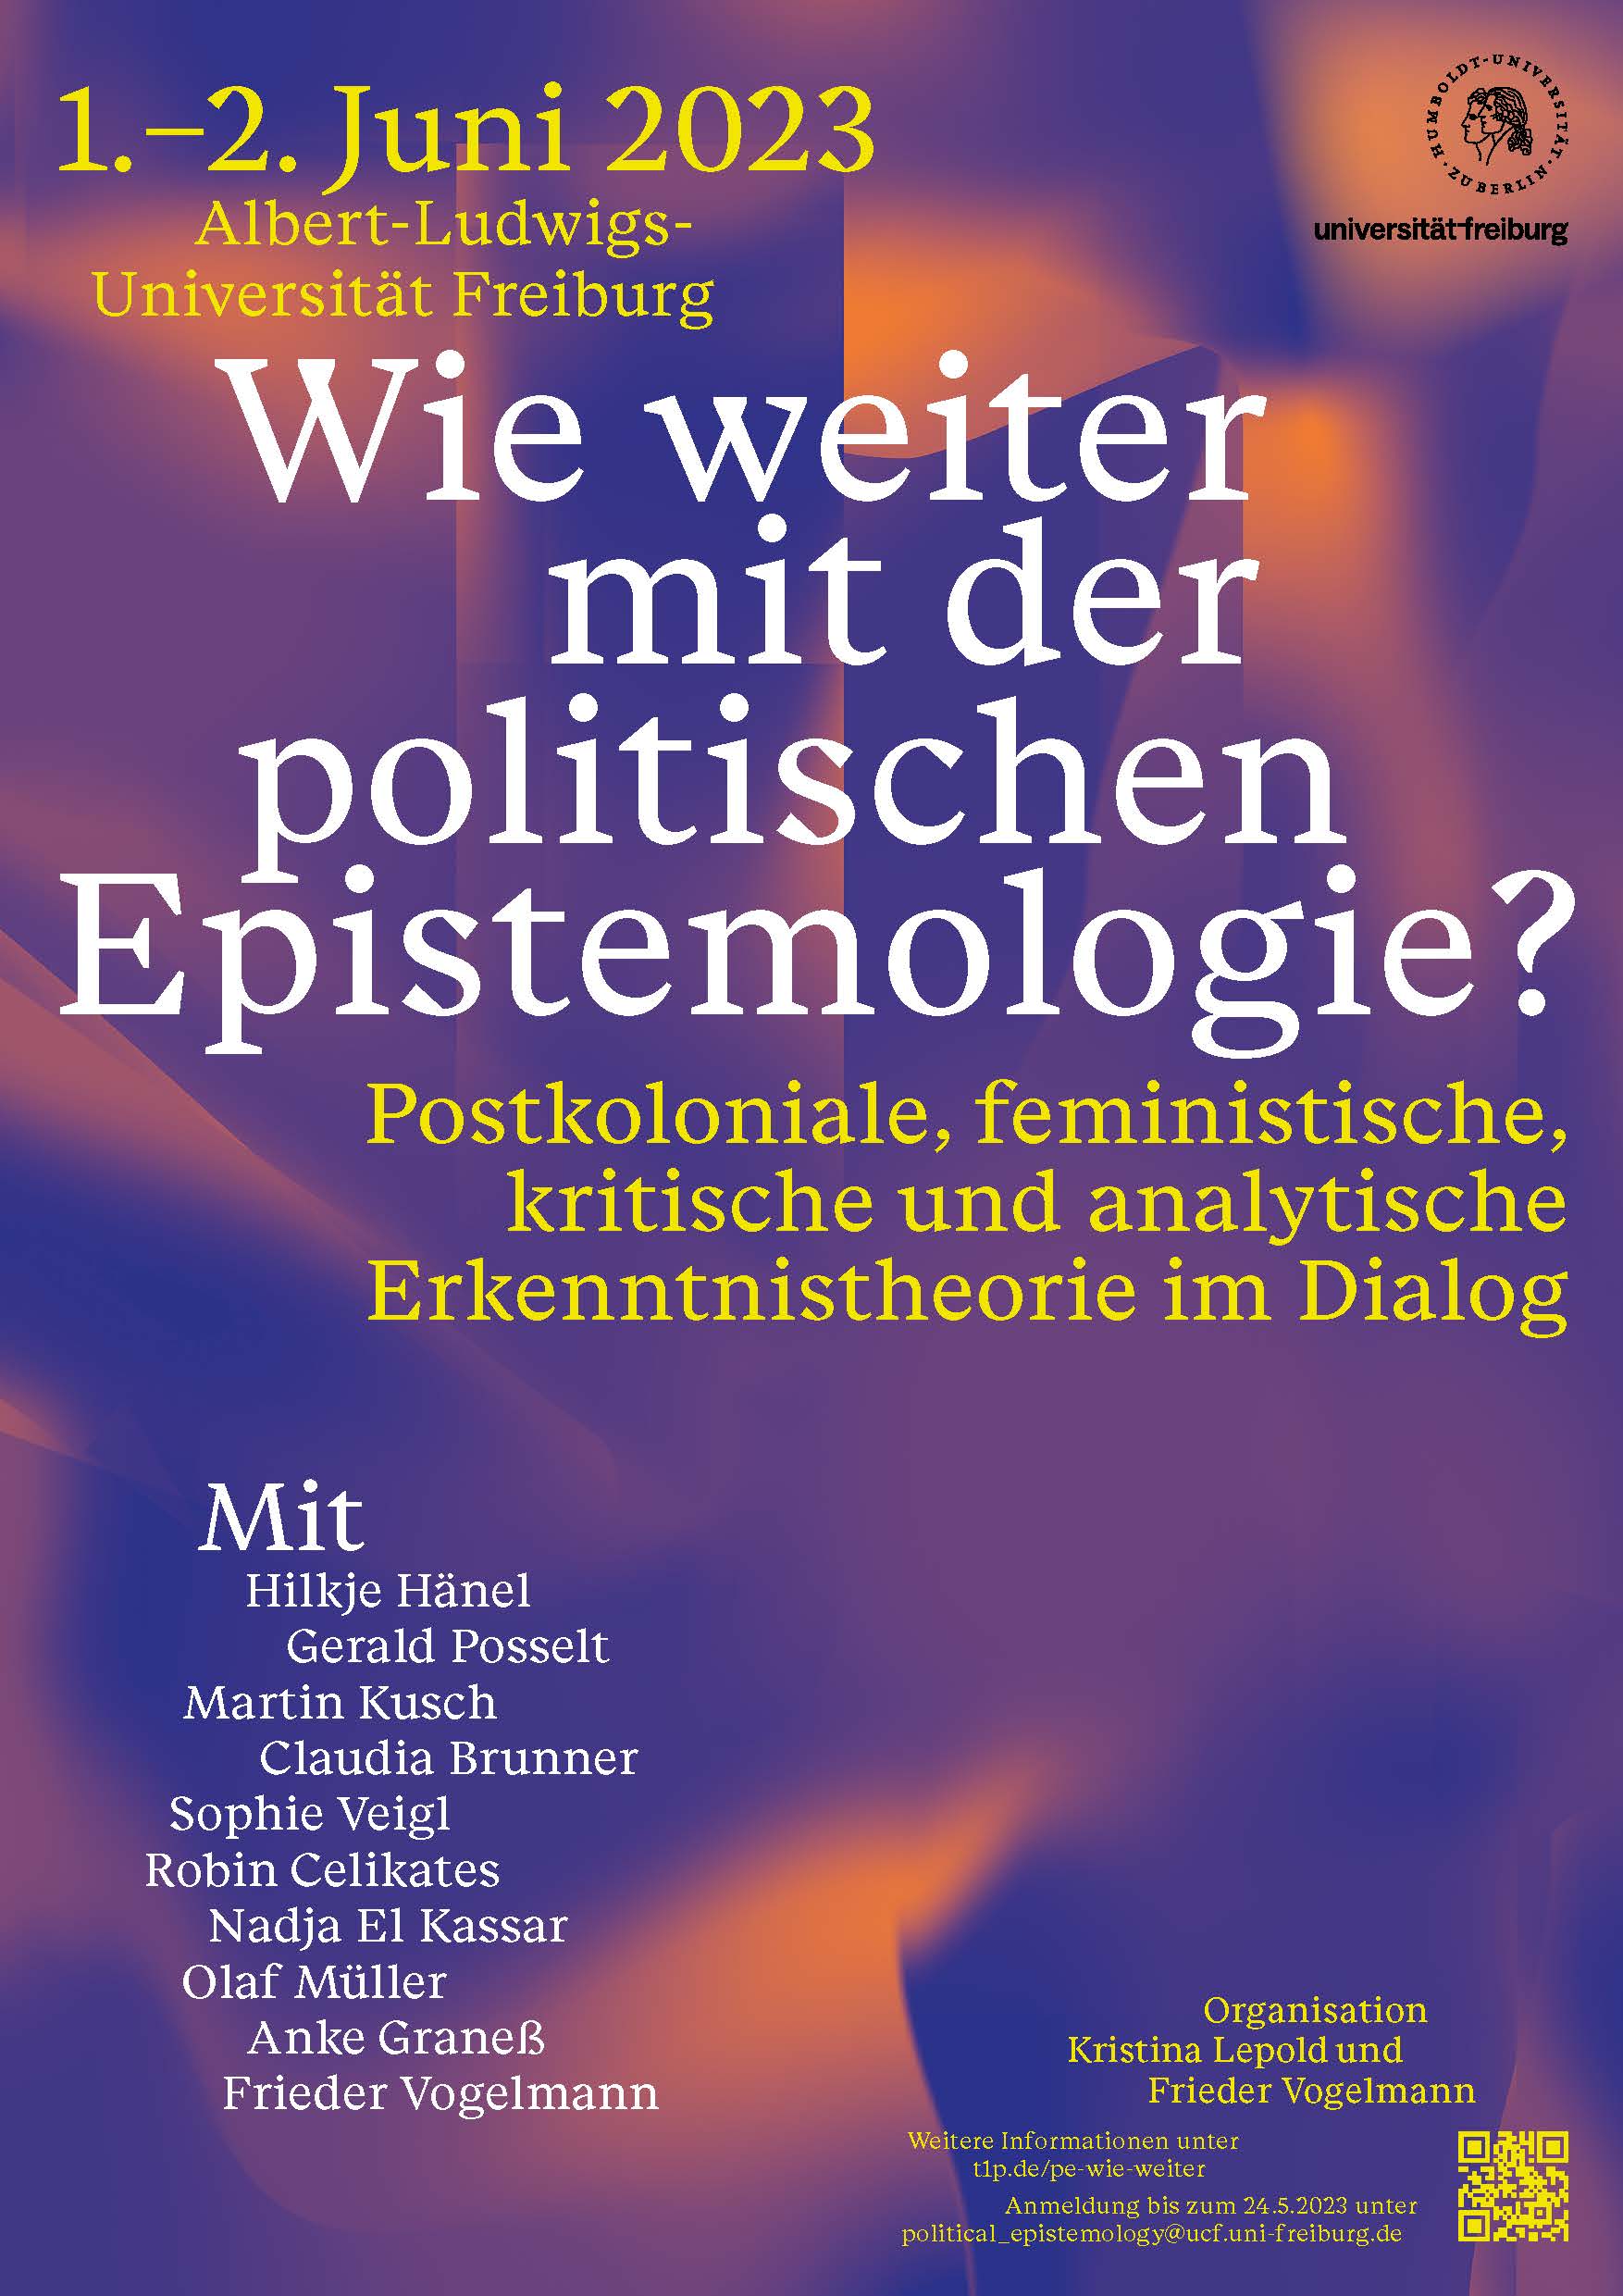 Workshop *Wie weiter mit der politischen Epistemologie?*